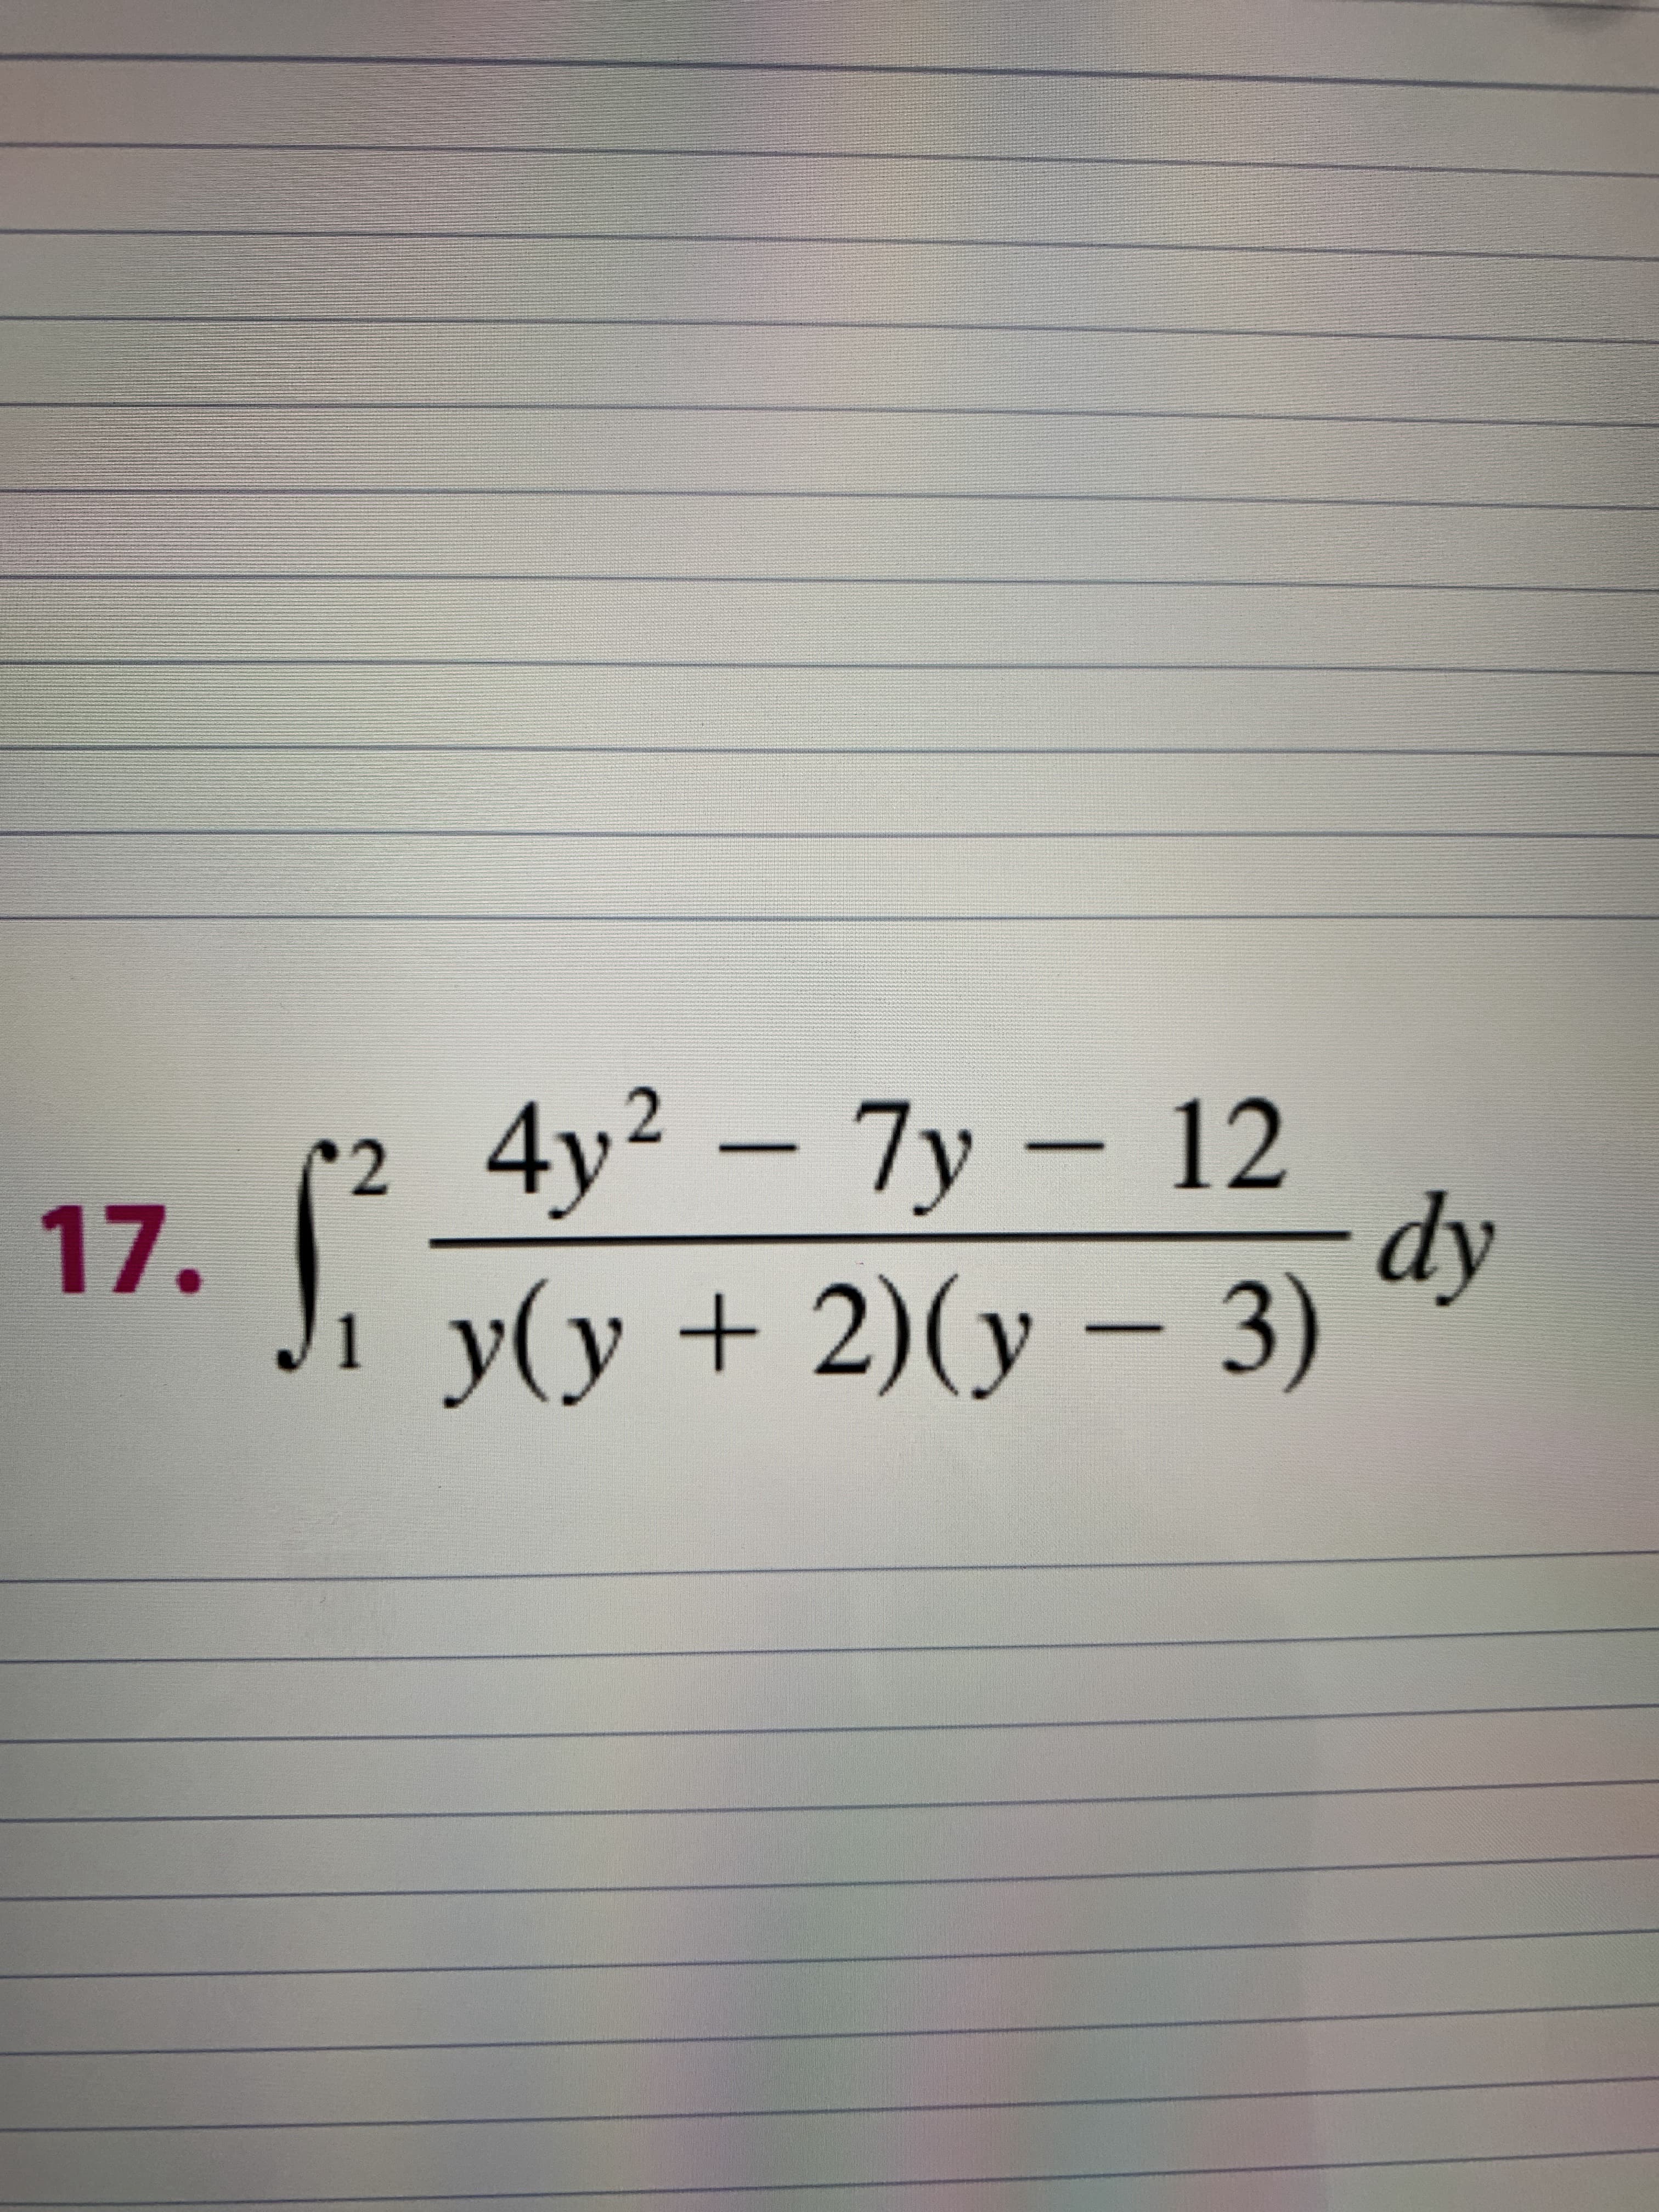 4y2 – 7y – 12
dy
17. \ y + 2)(y – 3)
